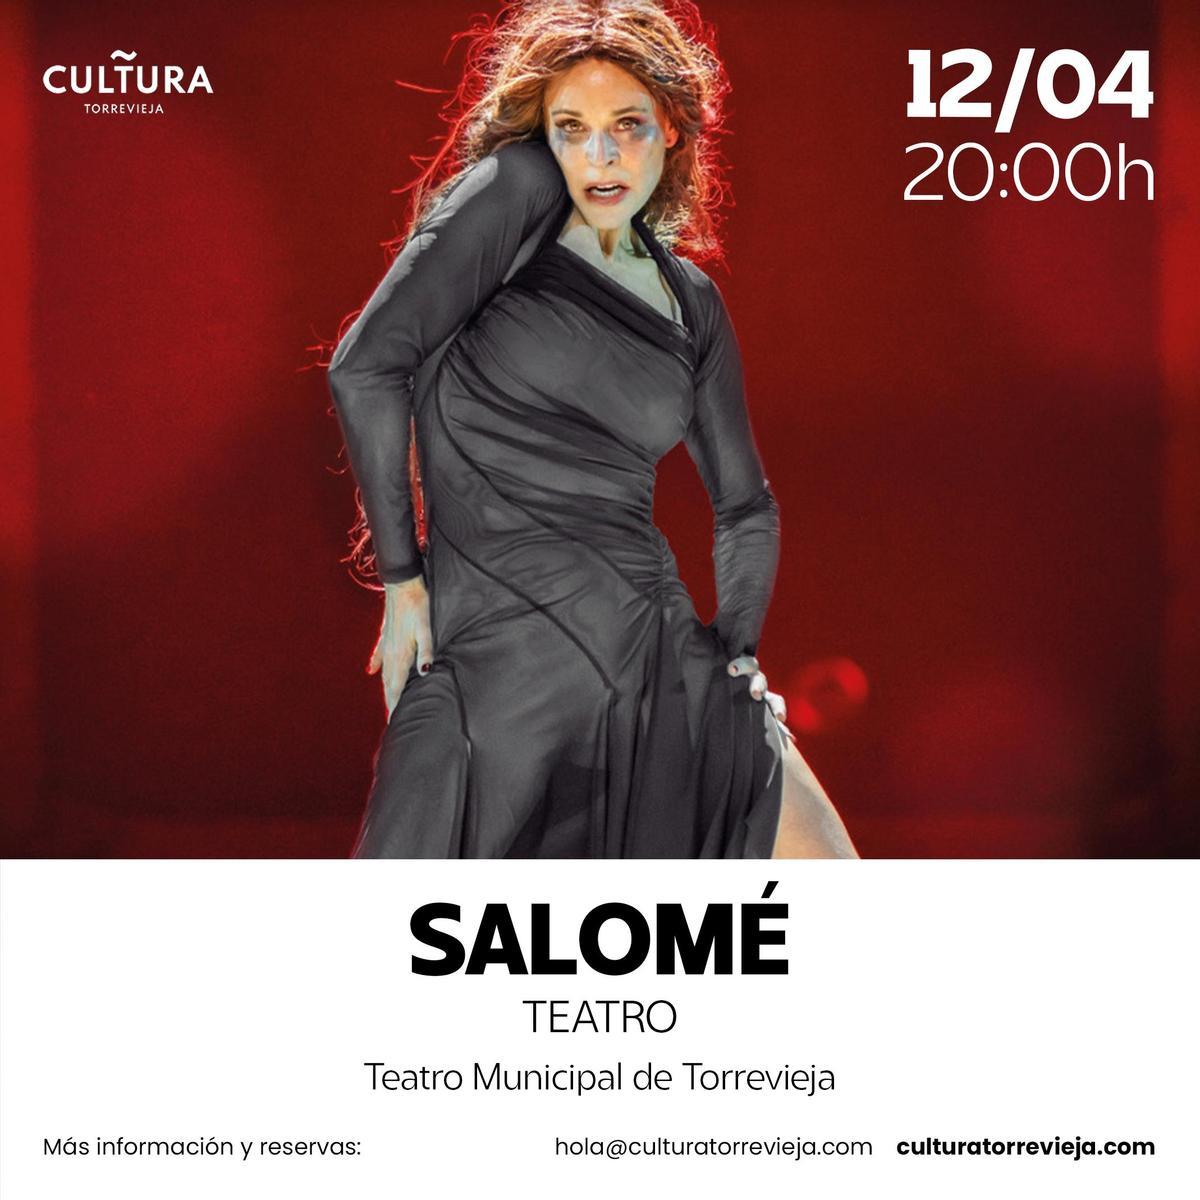 Salomé con Belén Rueda como protagonista este viernes en el Teatro Municipal